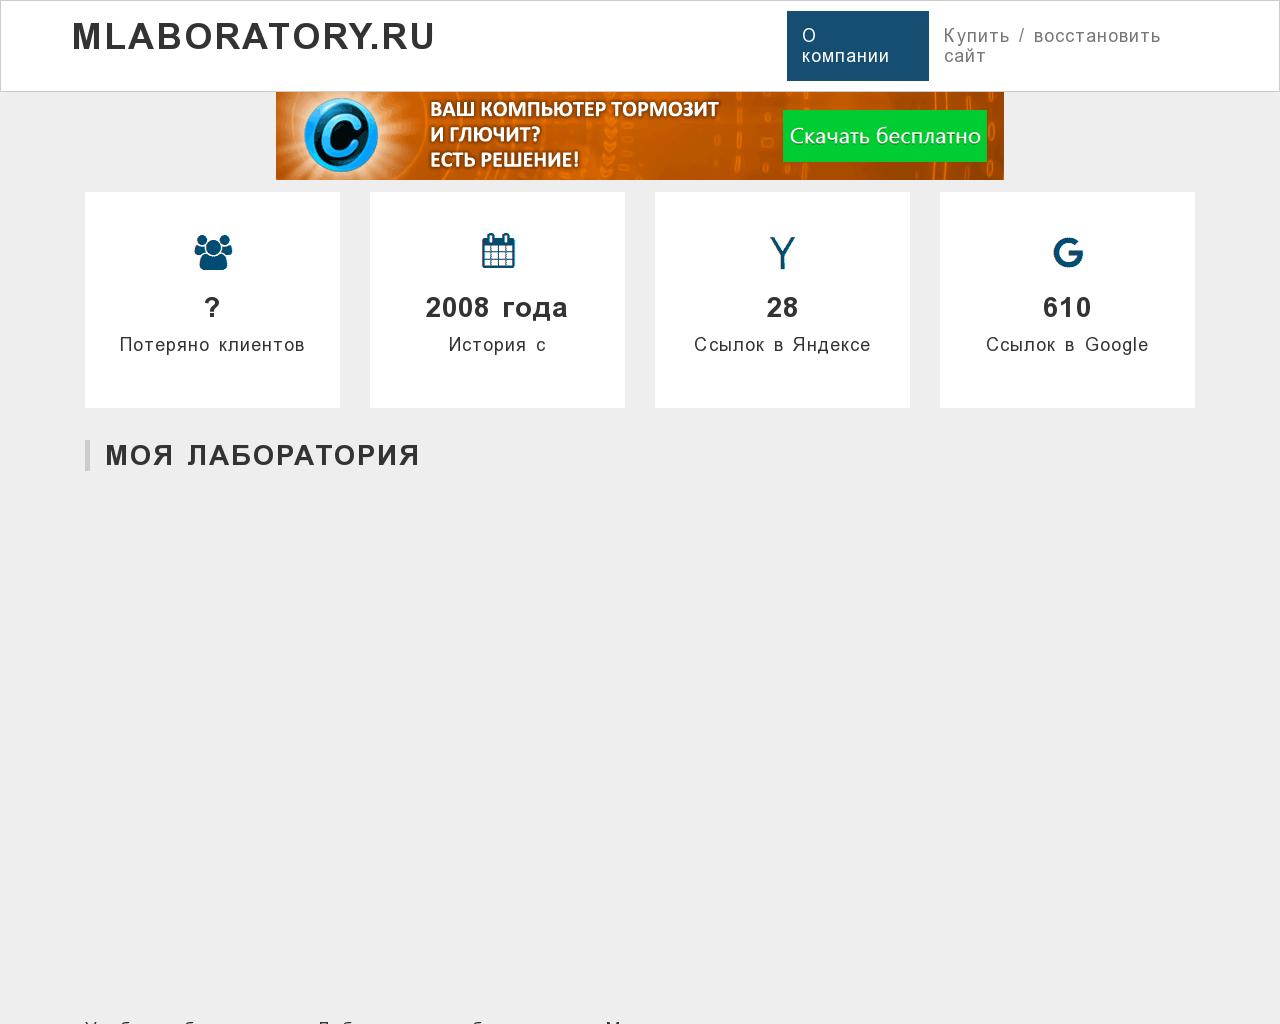 Изображение сайта mlaboratory.ru в разрешении 1280x1024